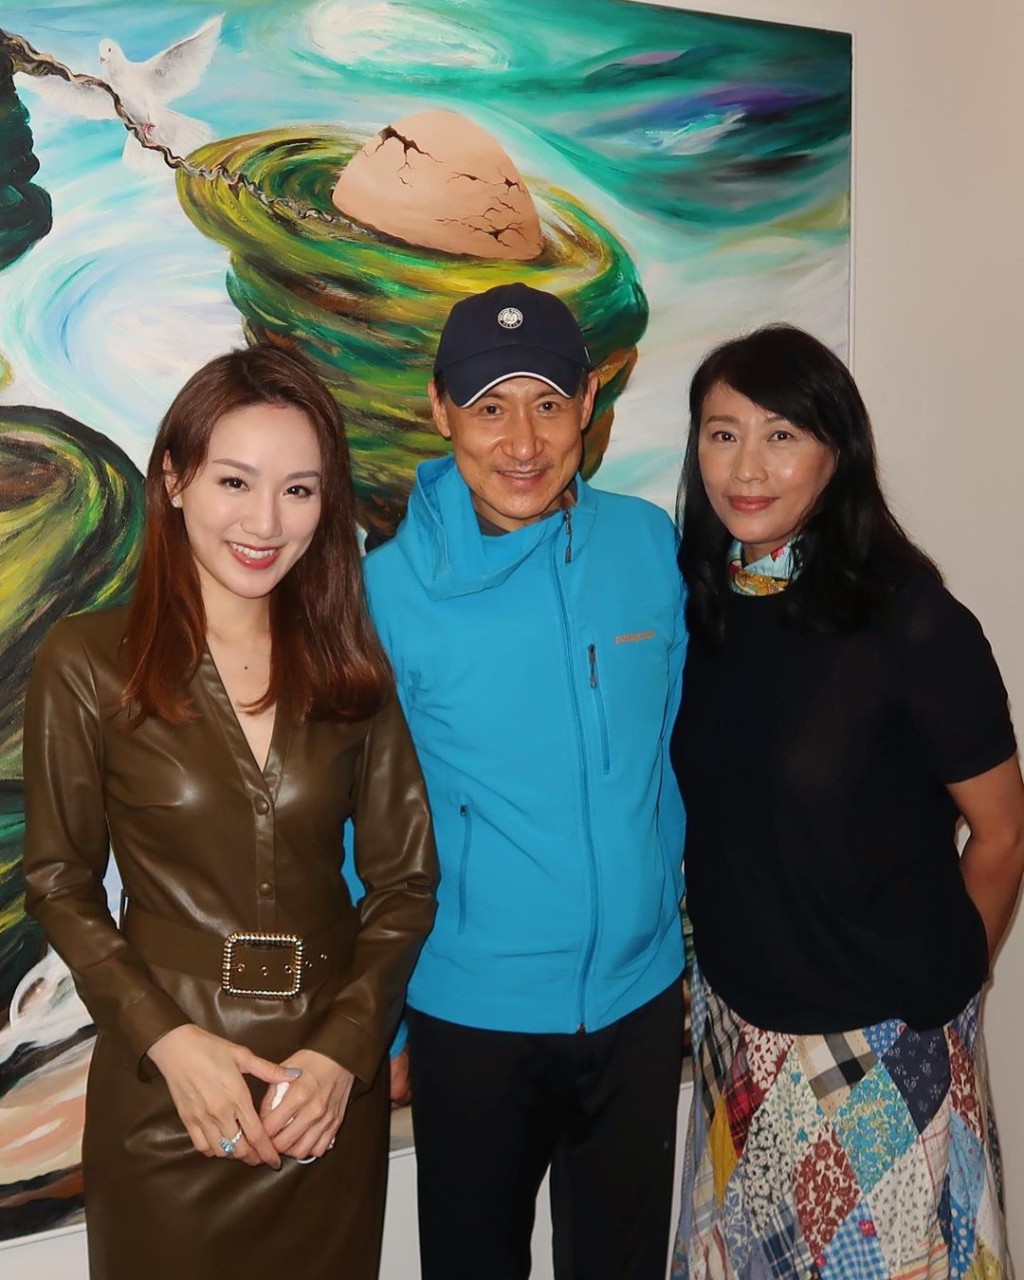 瑪姬亦分享了與藝術家陳竹君及張學友合照。